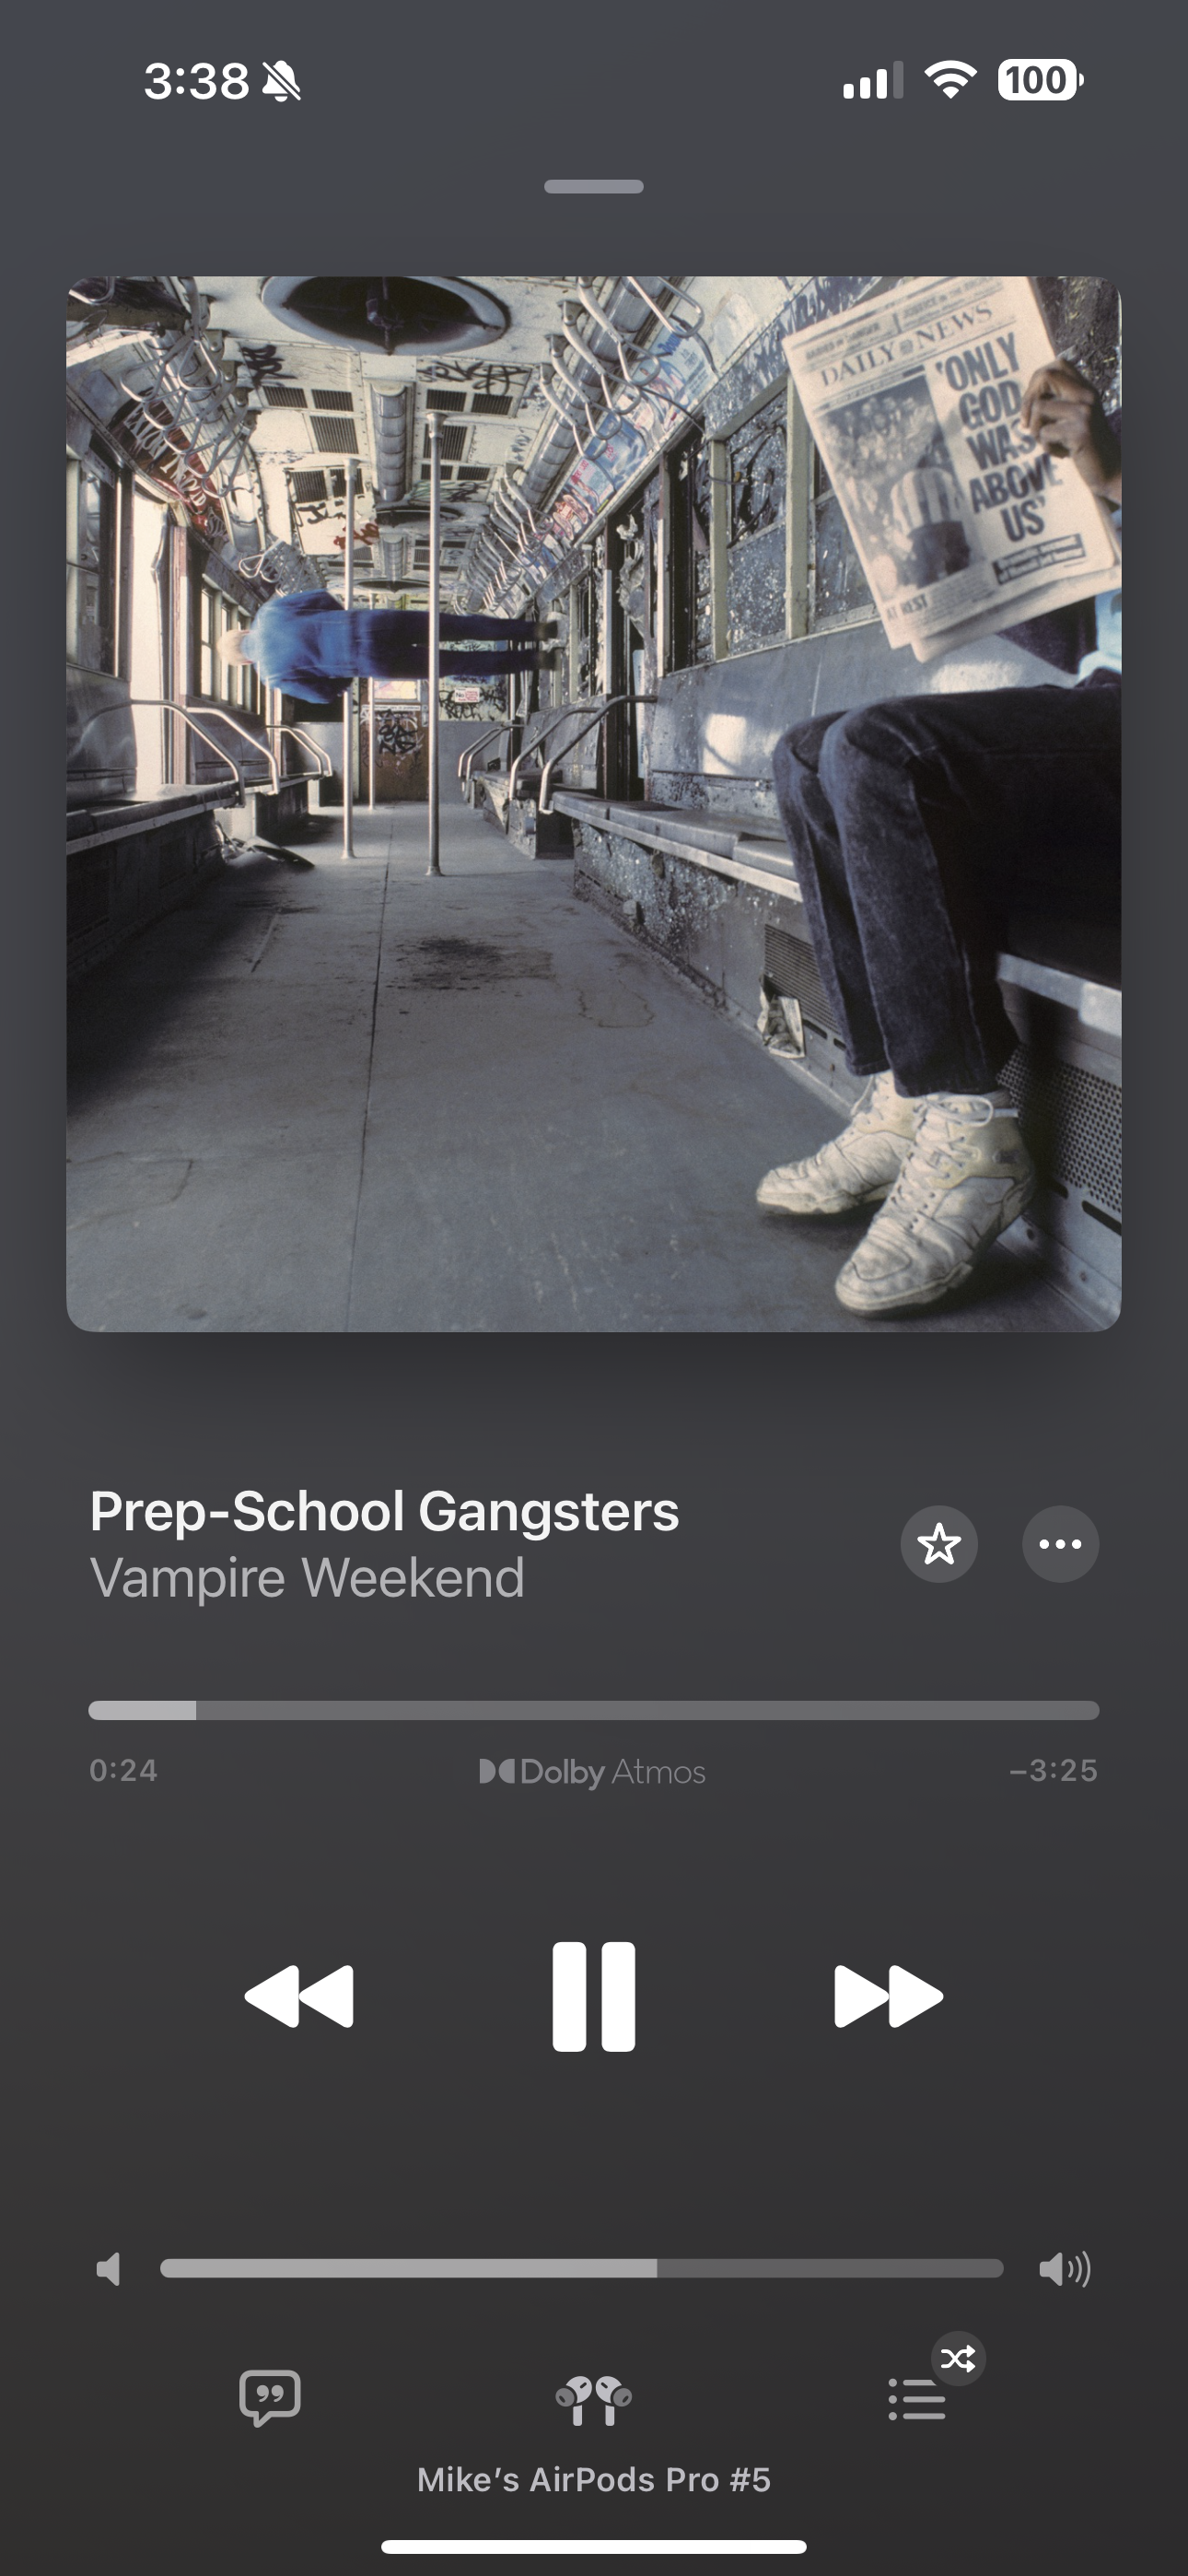 Vampire weekend album in Apple Music. 